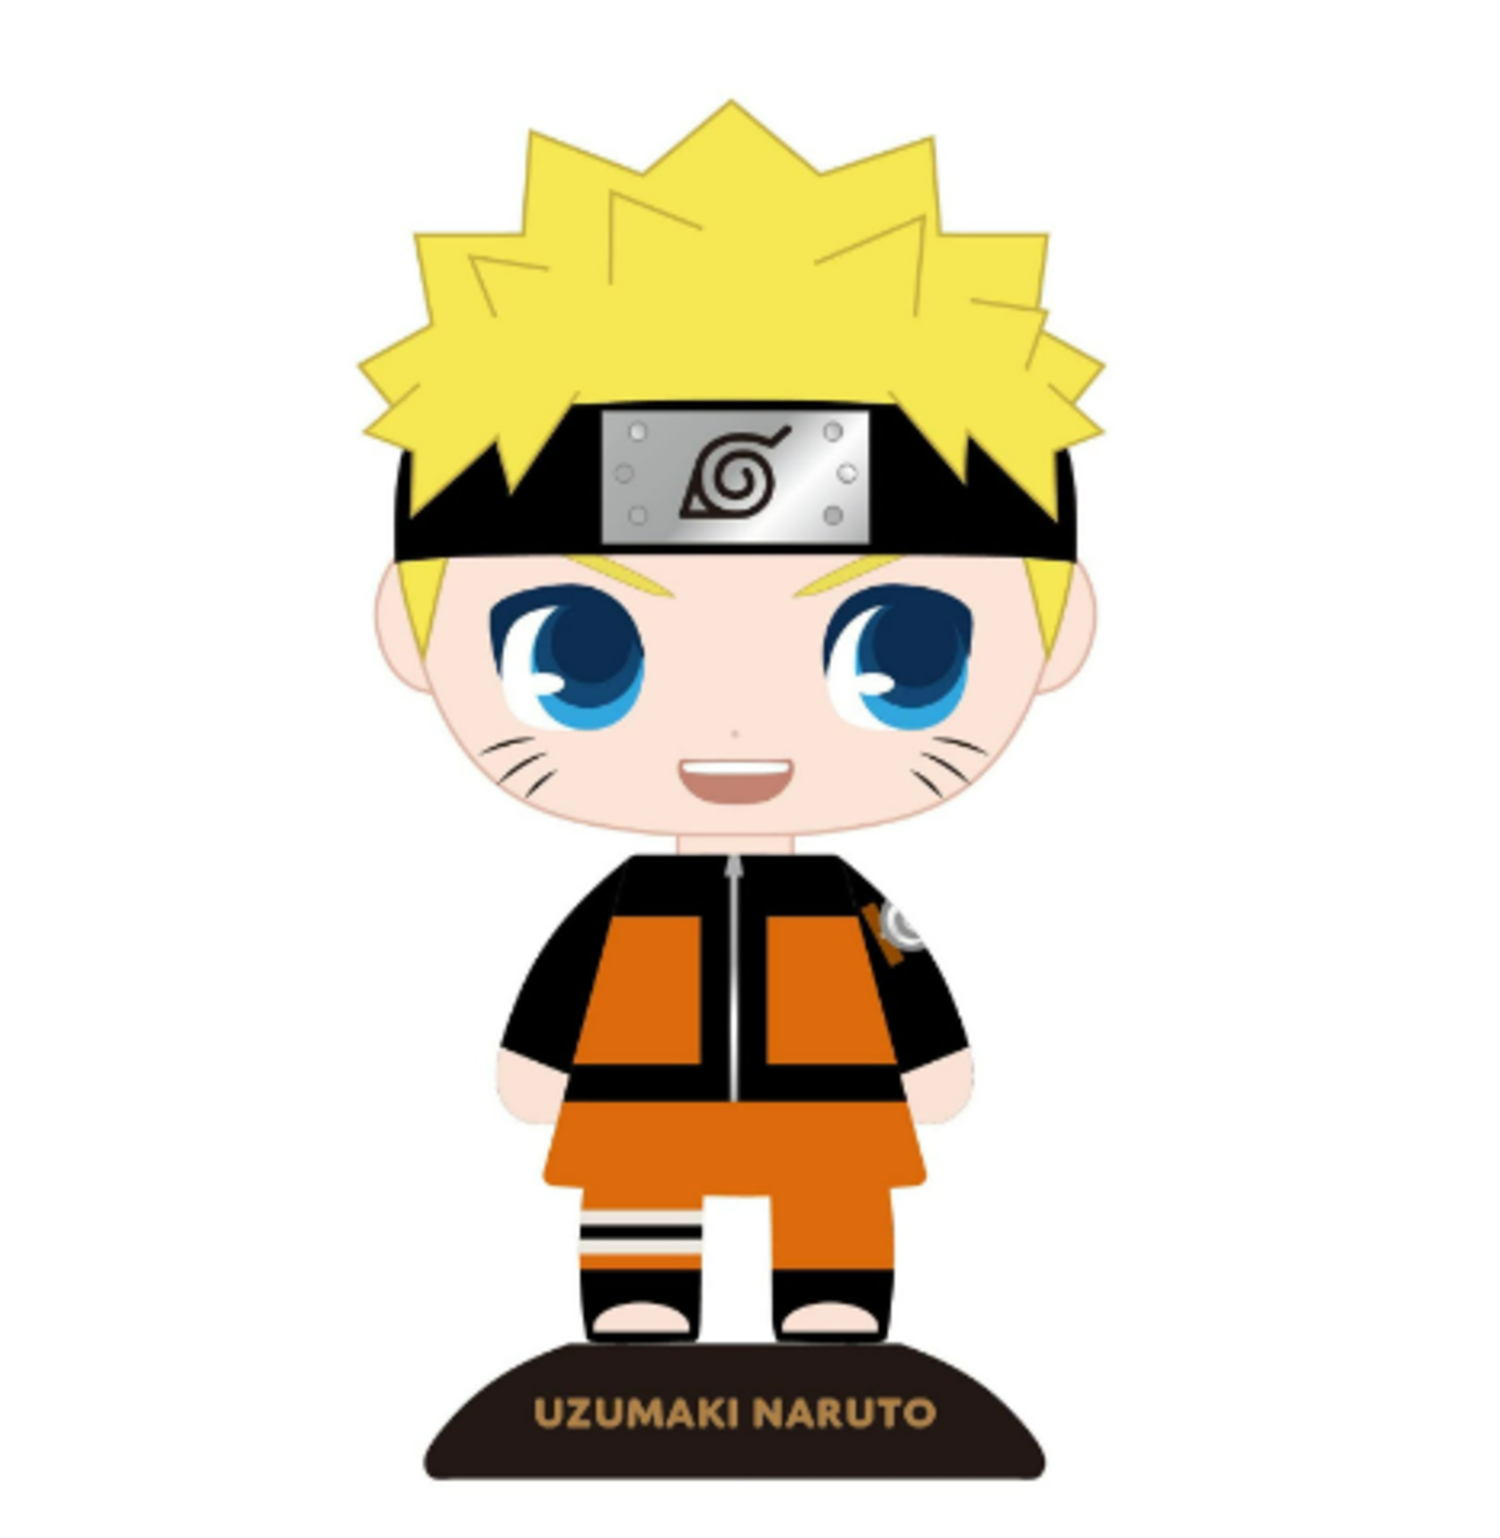 Với Naruto đầu gối nhún nhảy bobblehead, bạn sẽ có một chiếc đồ chơi độc đáo dành cho mình. Naruto được tái hiện với những chi tiết tuyệt vời và đầy sáng tạo, khiến bất kỳ fan của series này đều không thể bỏ qua. Hãy chiêm ngưỡng hình ảnh đẹp về Naruto bobblehead và đặt hàng ngay hôm nay!